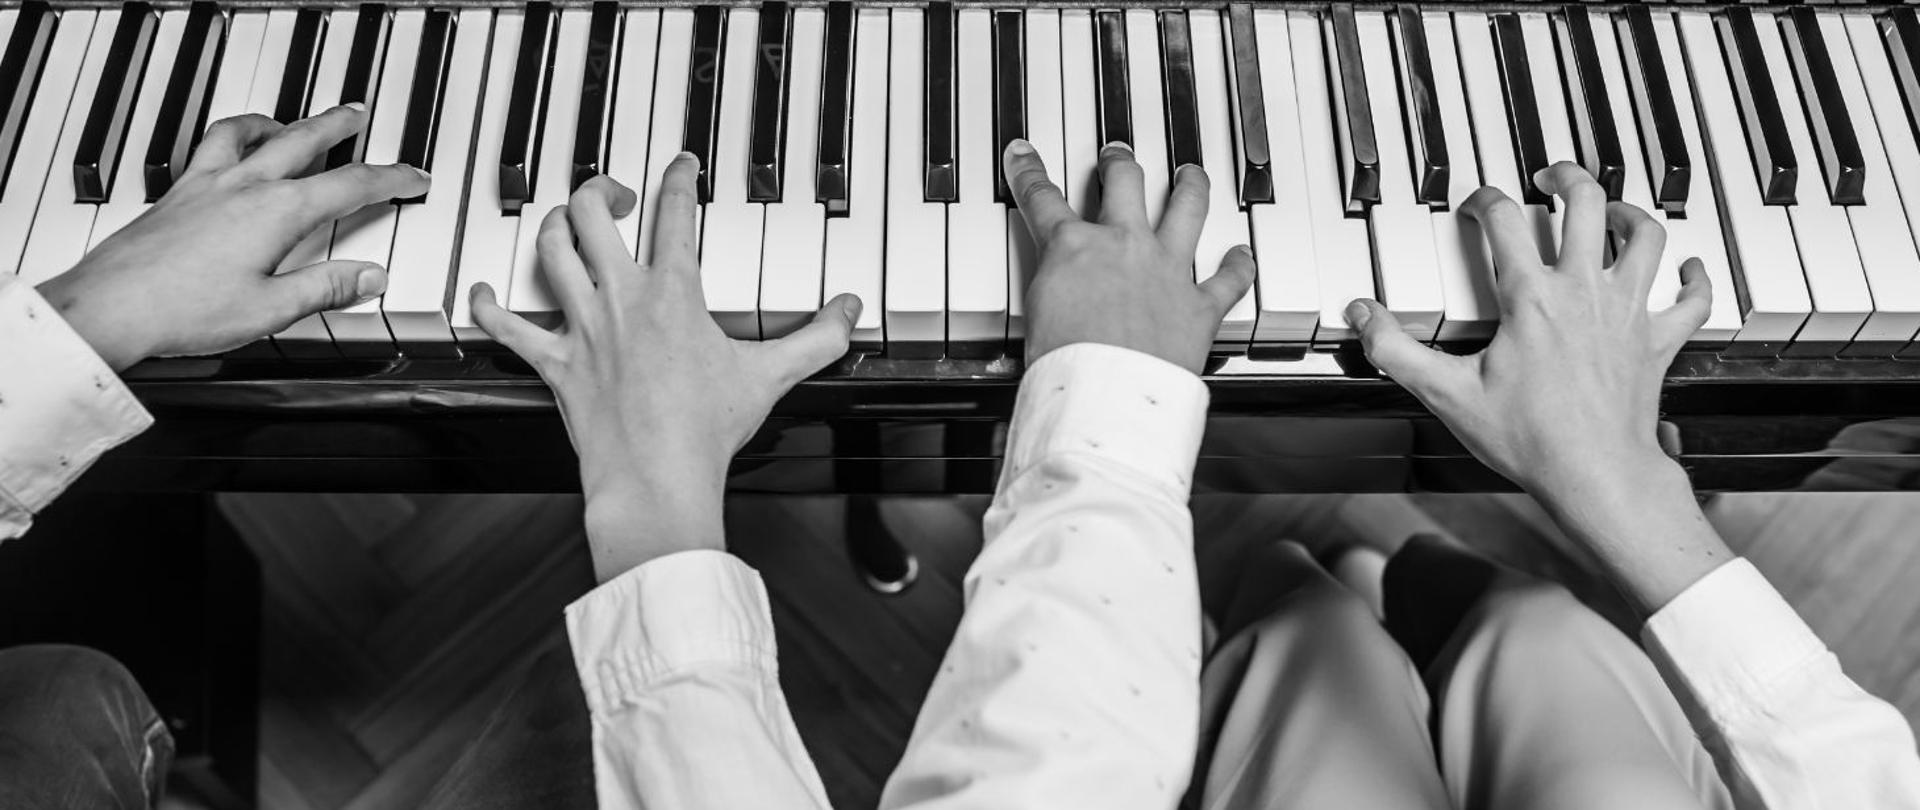 czarno-białe zdjęcie rąk dwóch osób grających na fortepianie, perspektywa z lotu ptaka, dłonie odbijają się w desce fortepianu